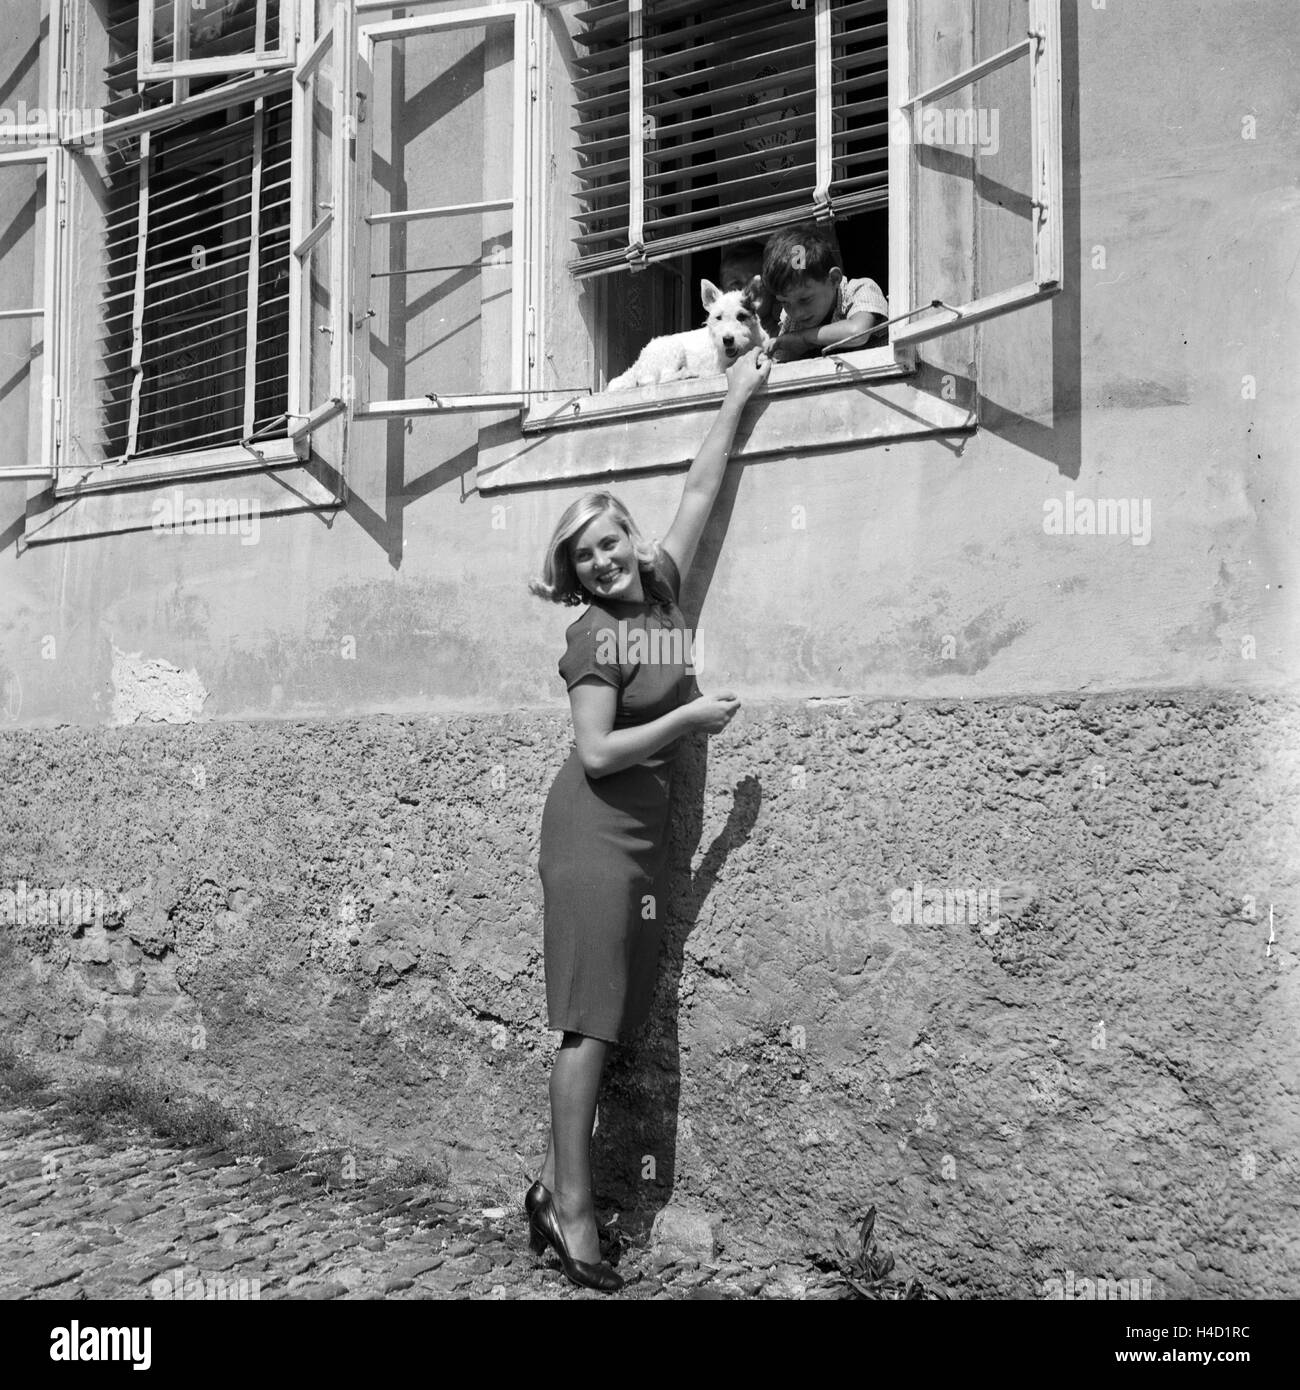 Eine junge Frau unterhält sich am Fenster mit einem kleinen Jungen und seinem Hund, Deutschland 1930er Jahre. Une jeune femme avec un garçon et son chien dans une fenêtre, l'Allemagne des années 1930. Banque D'Images